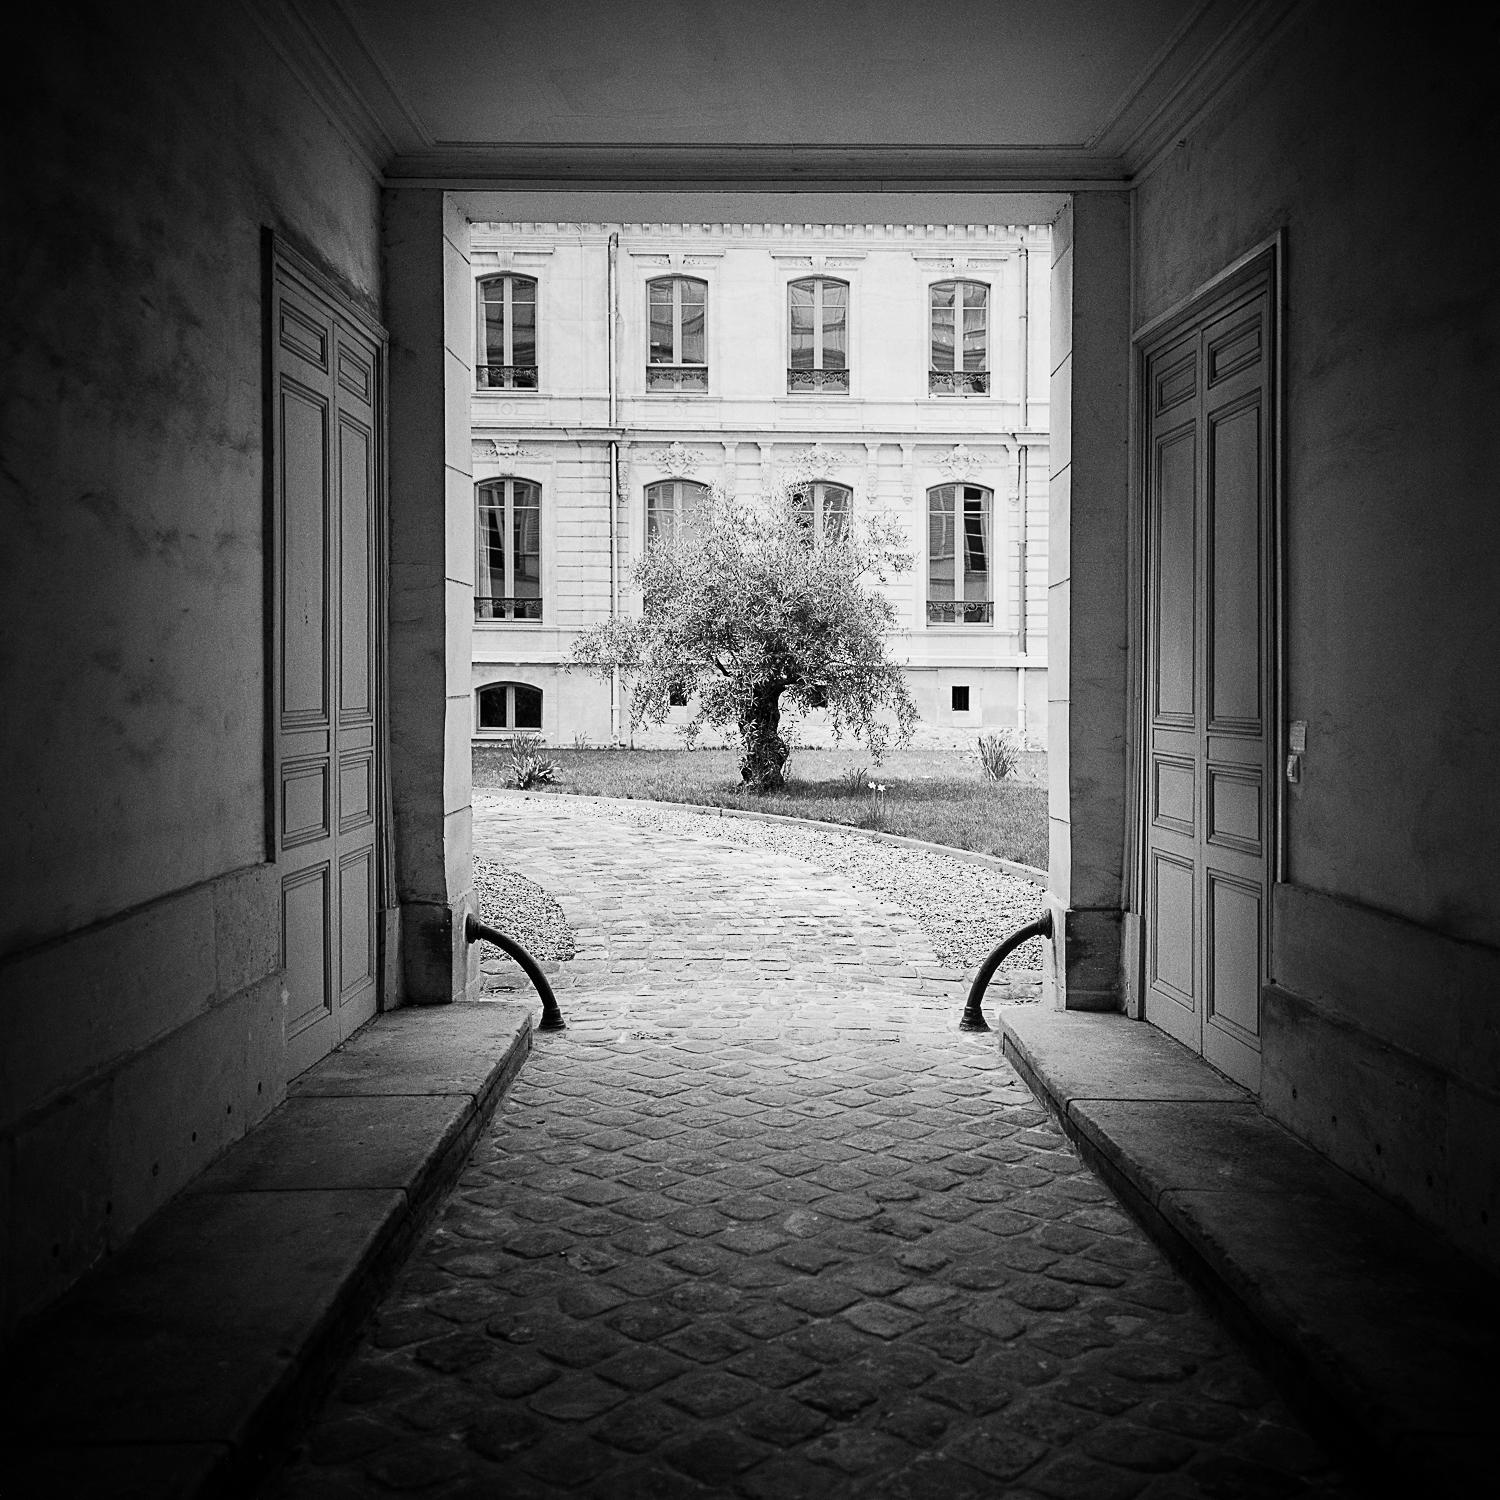 Tree in the Courtyard, Paris, photographie en noir et blanc, impression pigmentaire, encadrée - Photograph de Gerald Berghammer